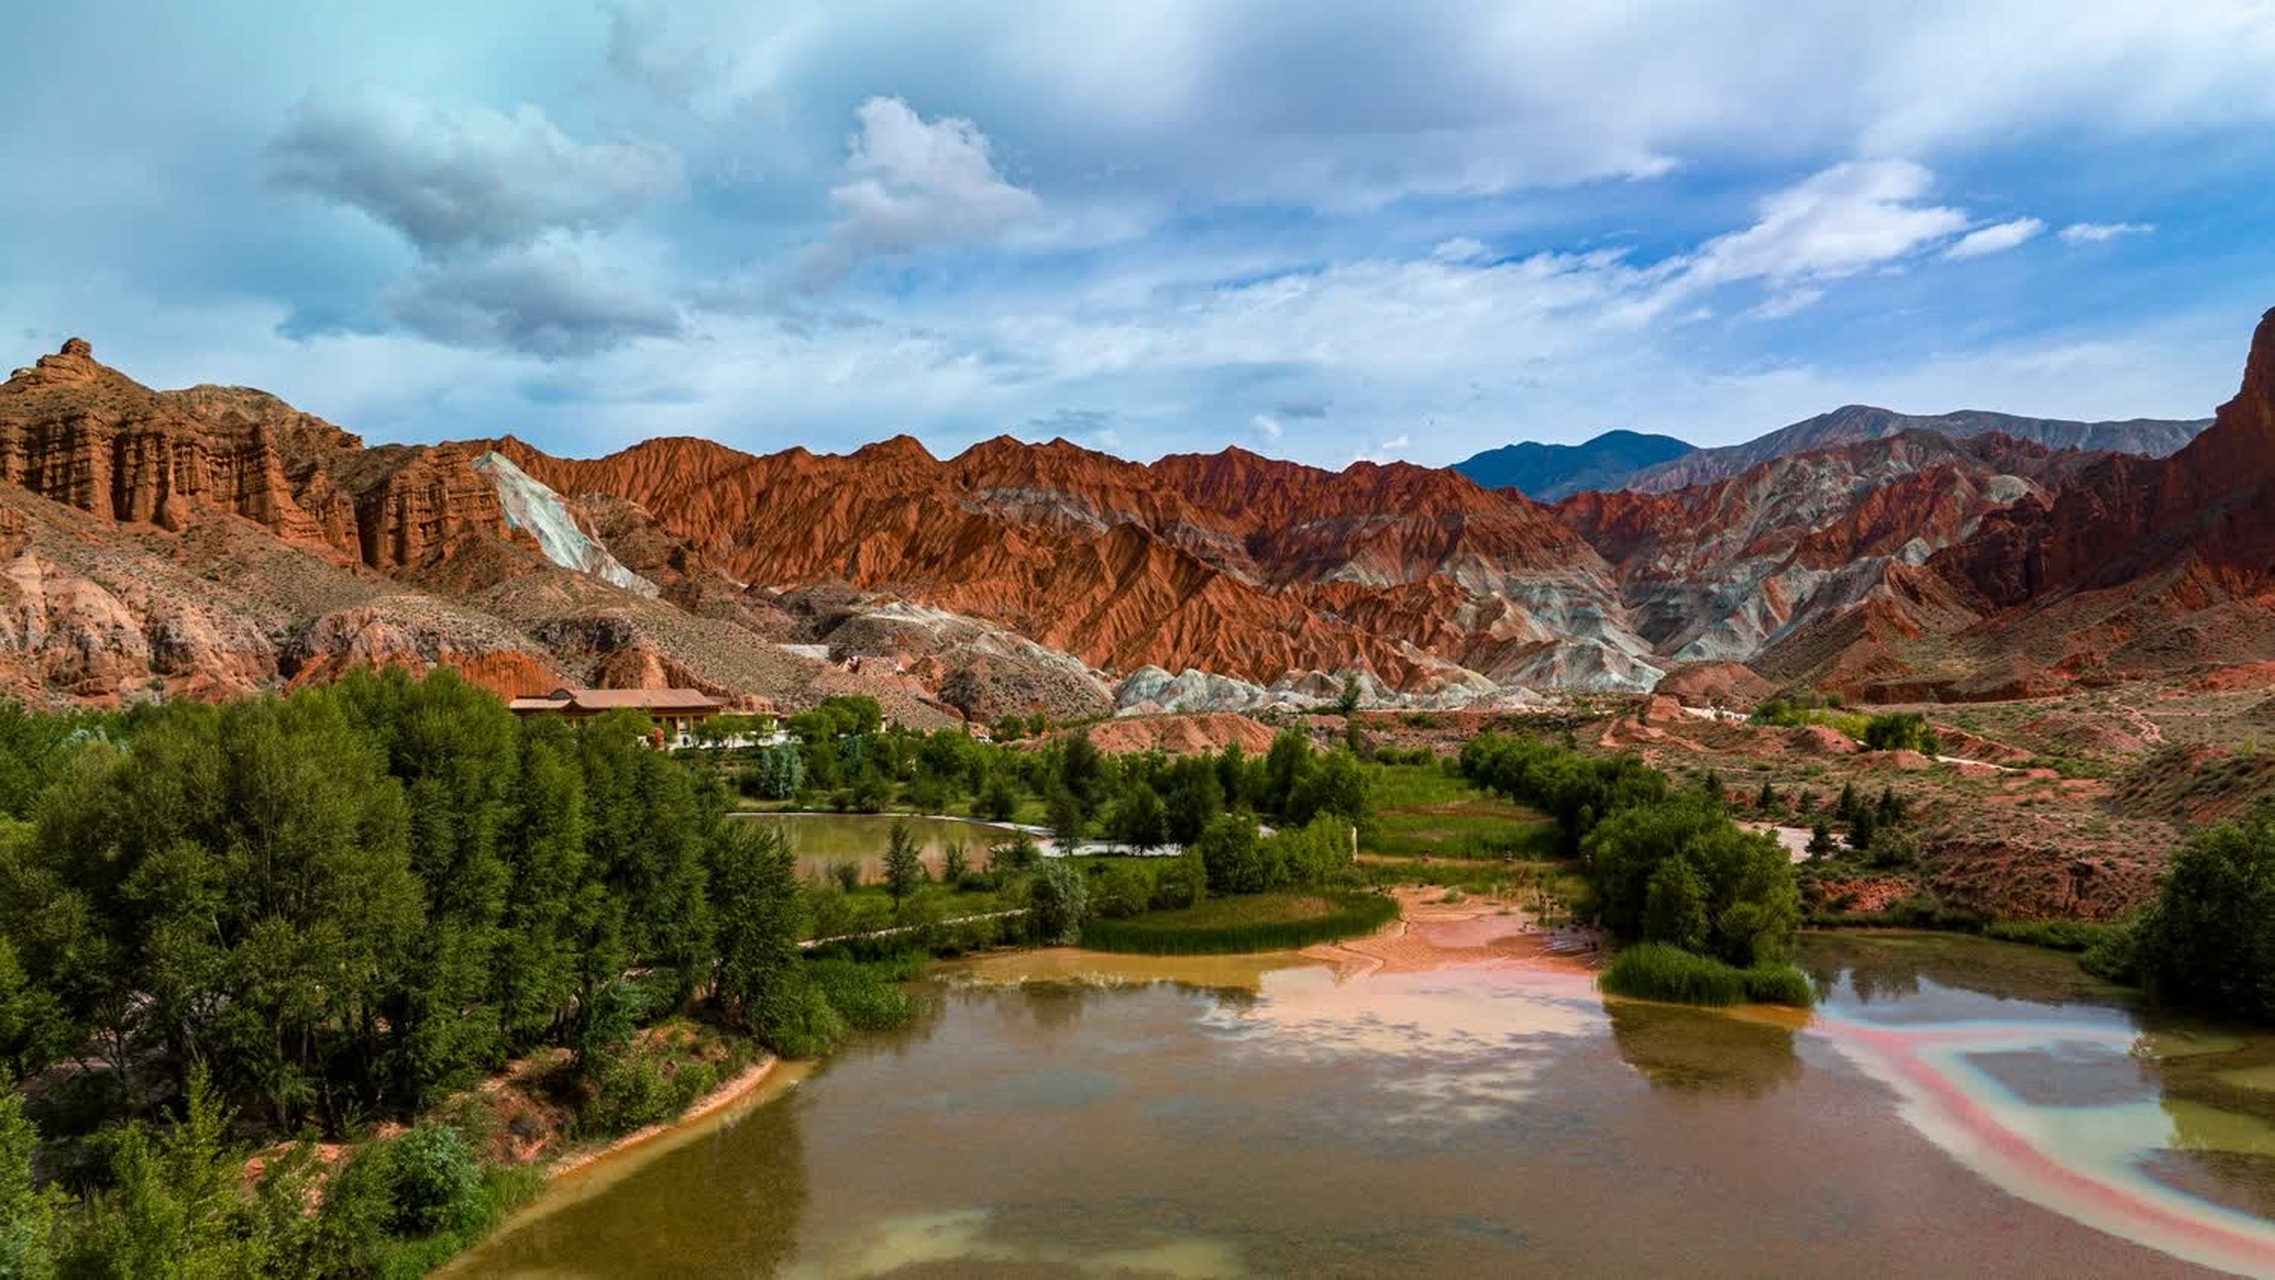 贵德国家地质公园位于青海省海南藏族自治州贵德县,公园的丹霞地貌是